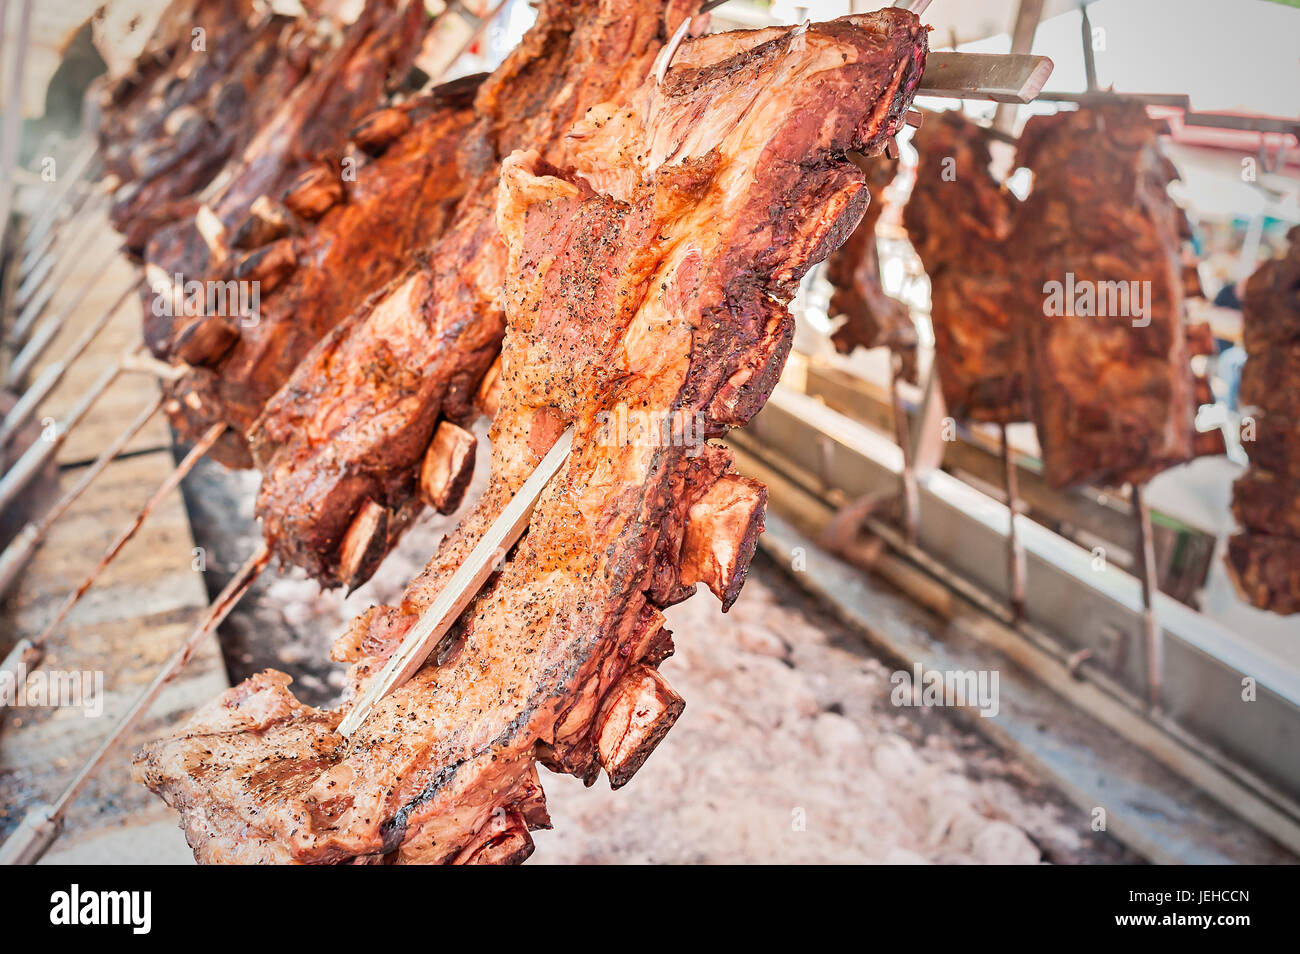 La viande rôtie de boeuf cuit sur un gril vertical placé autour de l'incendie. Barbecue traditionnel asado, lave en Argentine Banque D'Images